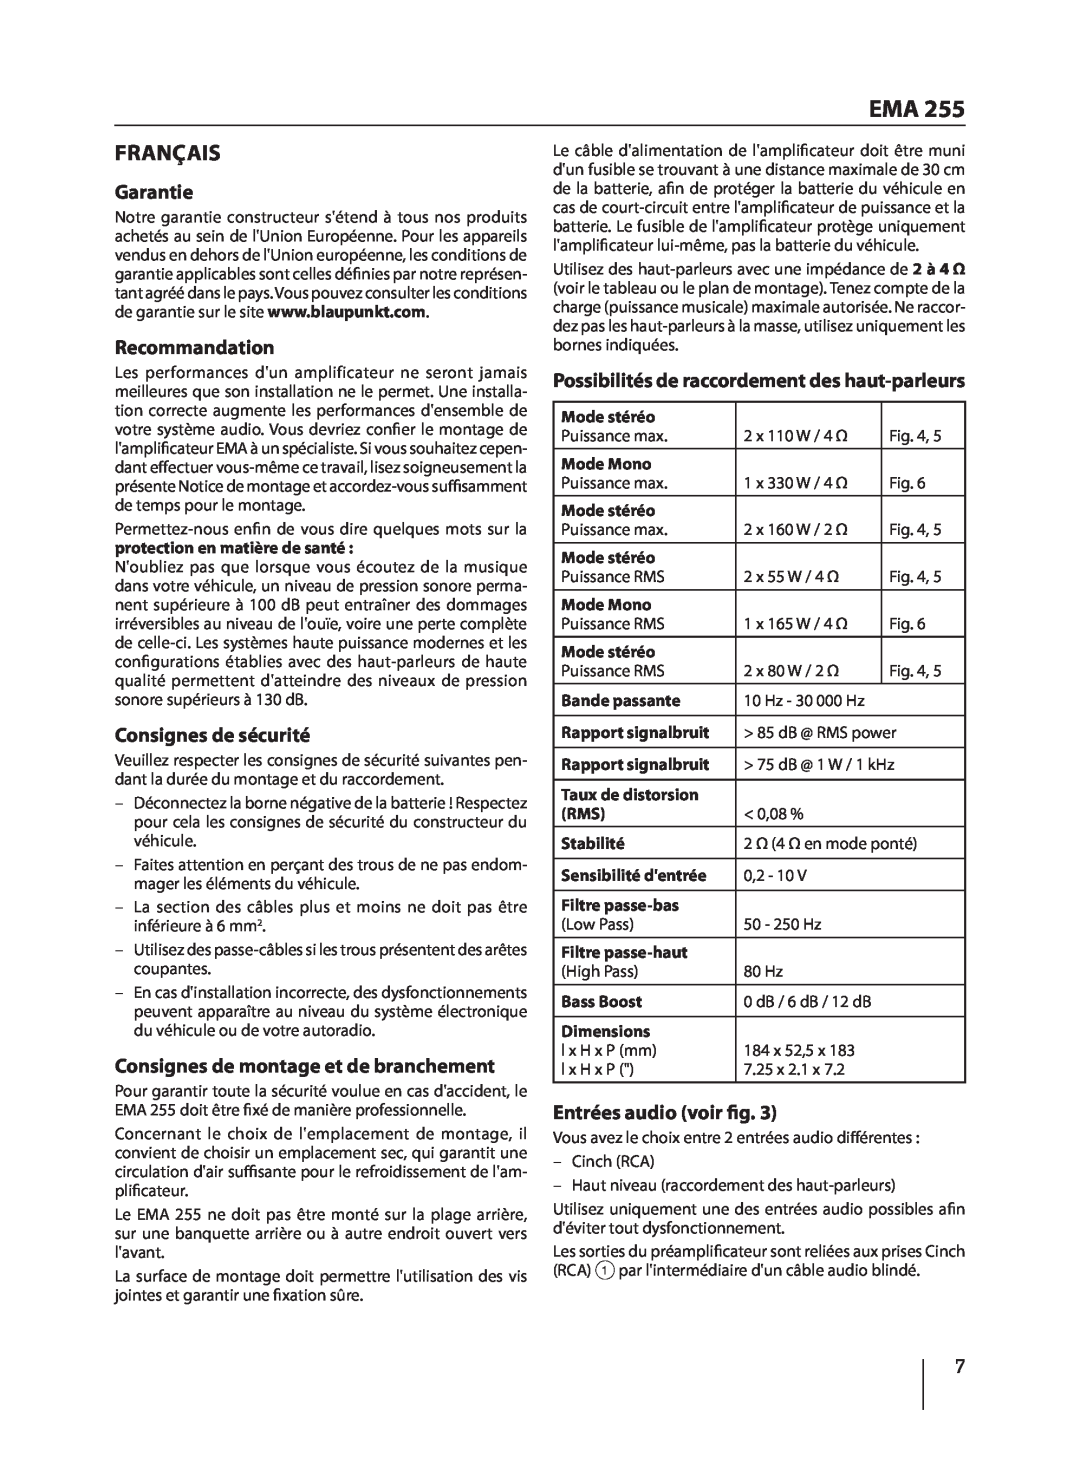 Blaupunkt EMA 255 manual Français, Garantie, Recommandation, Consignes de sécurité, Consignes de montage et de branchement 